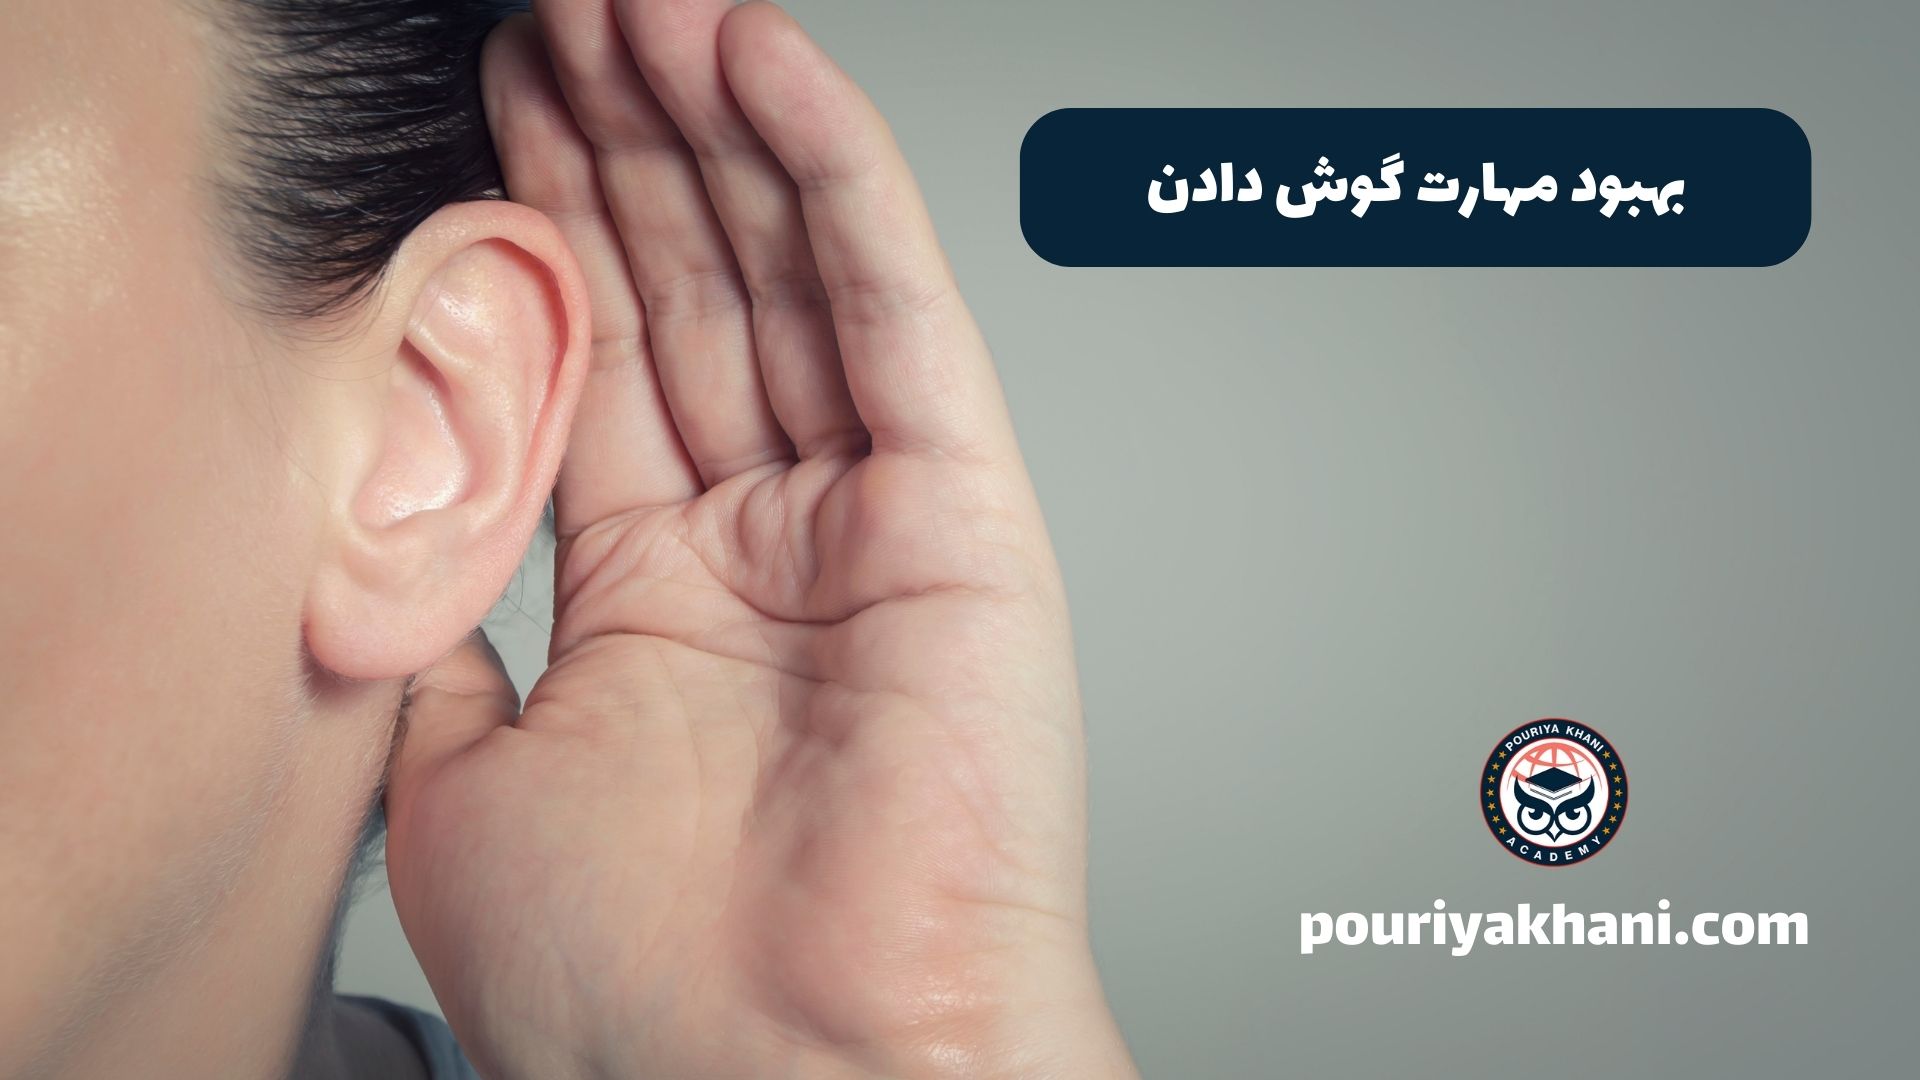 بهبود مهارت گوش دادن